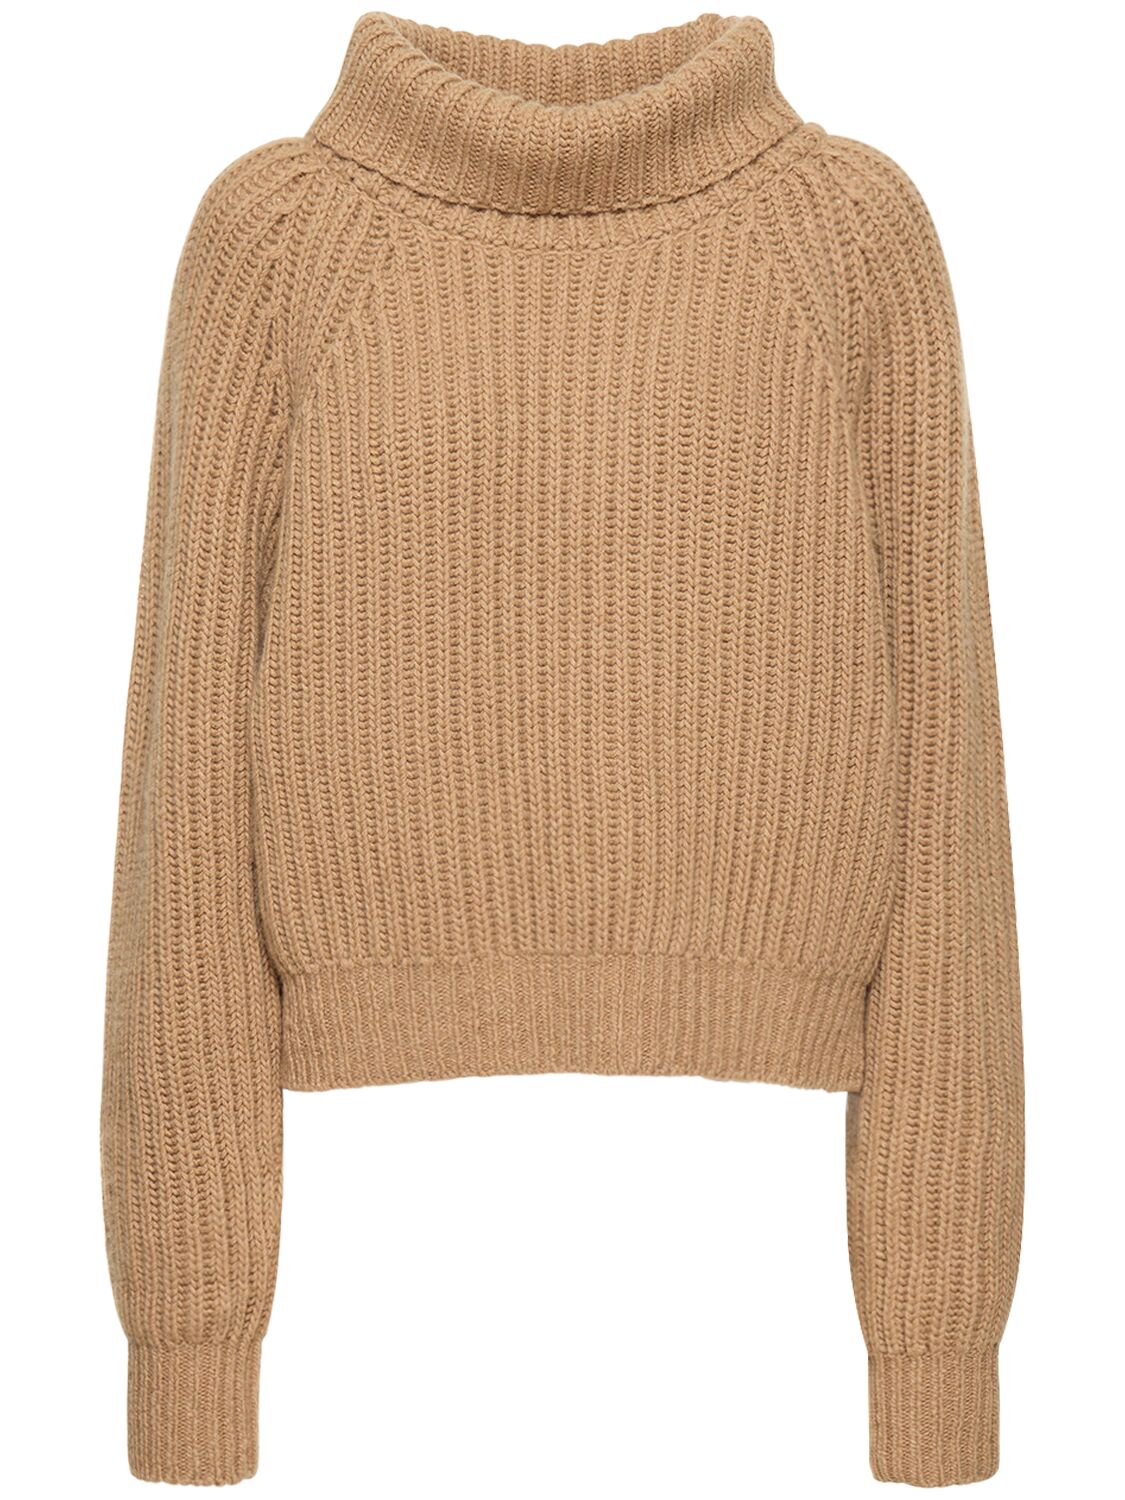 Image of Lanzino Cashmere Turtleneck Sweater